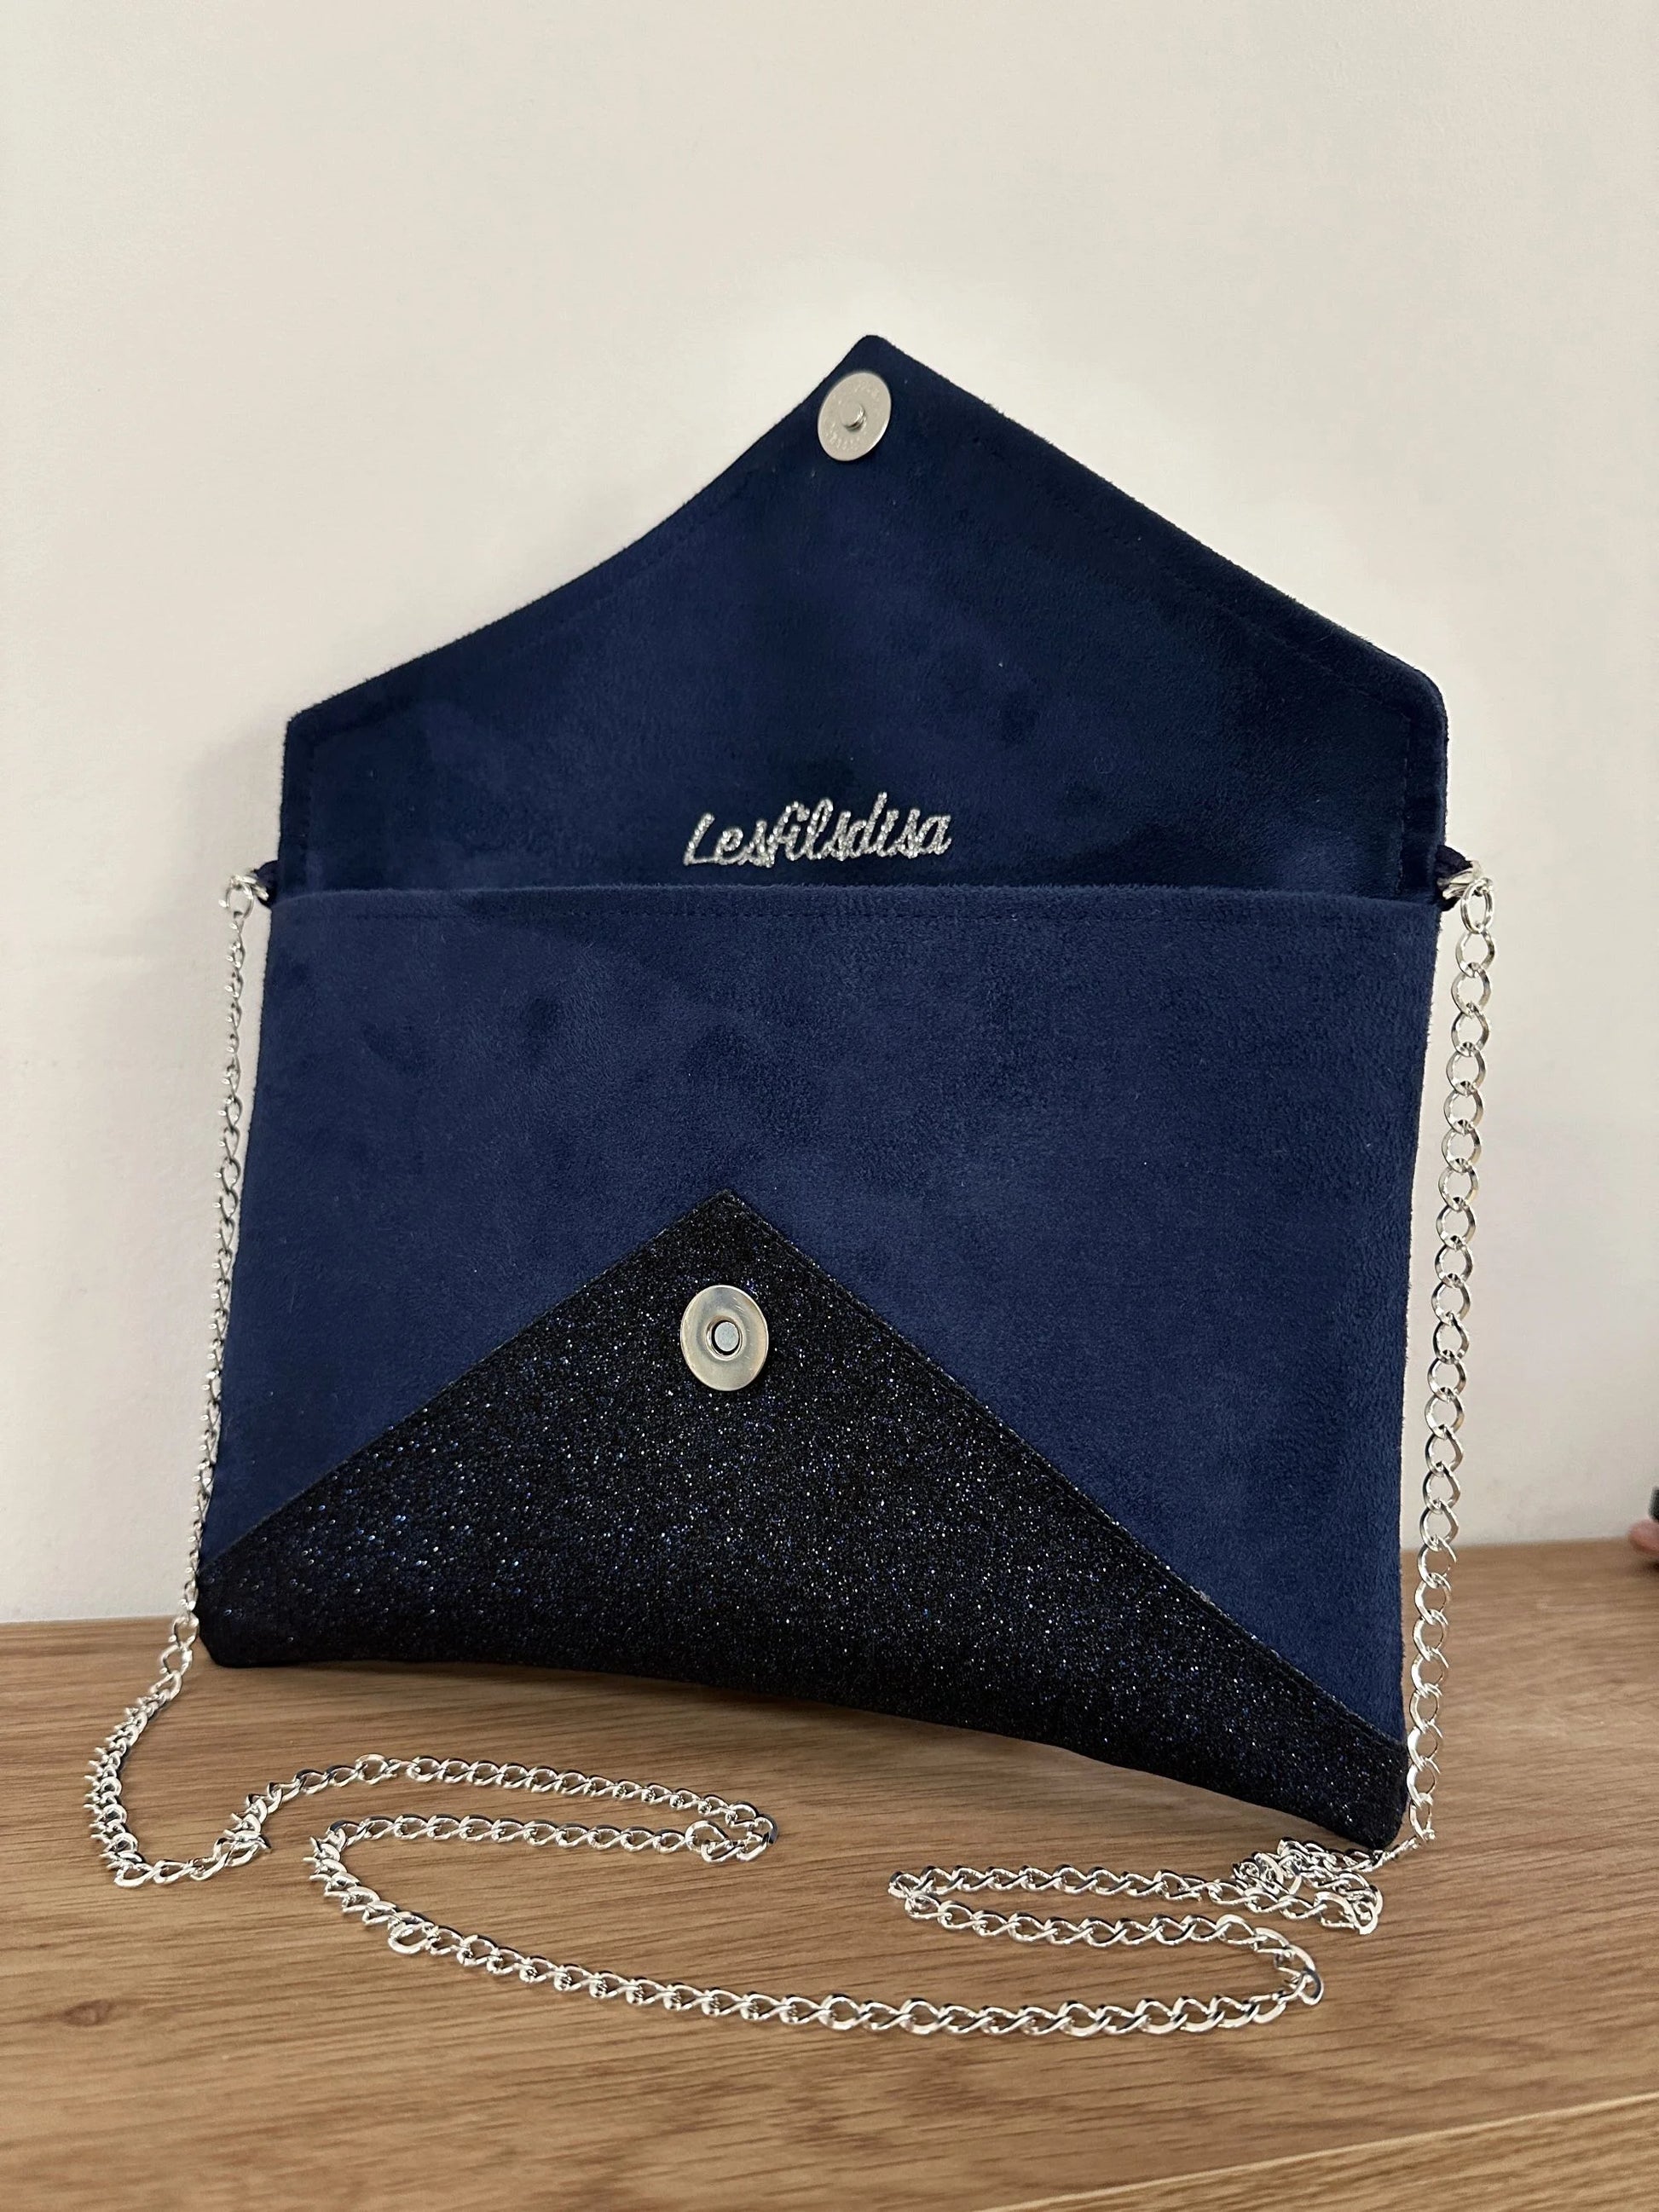 Le Le sac pochette Isa à paillettes bleu marine et argentées, ouvert.